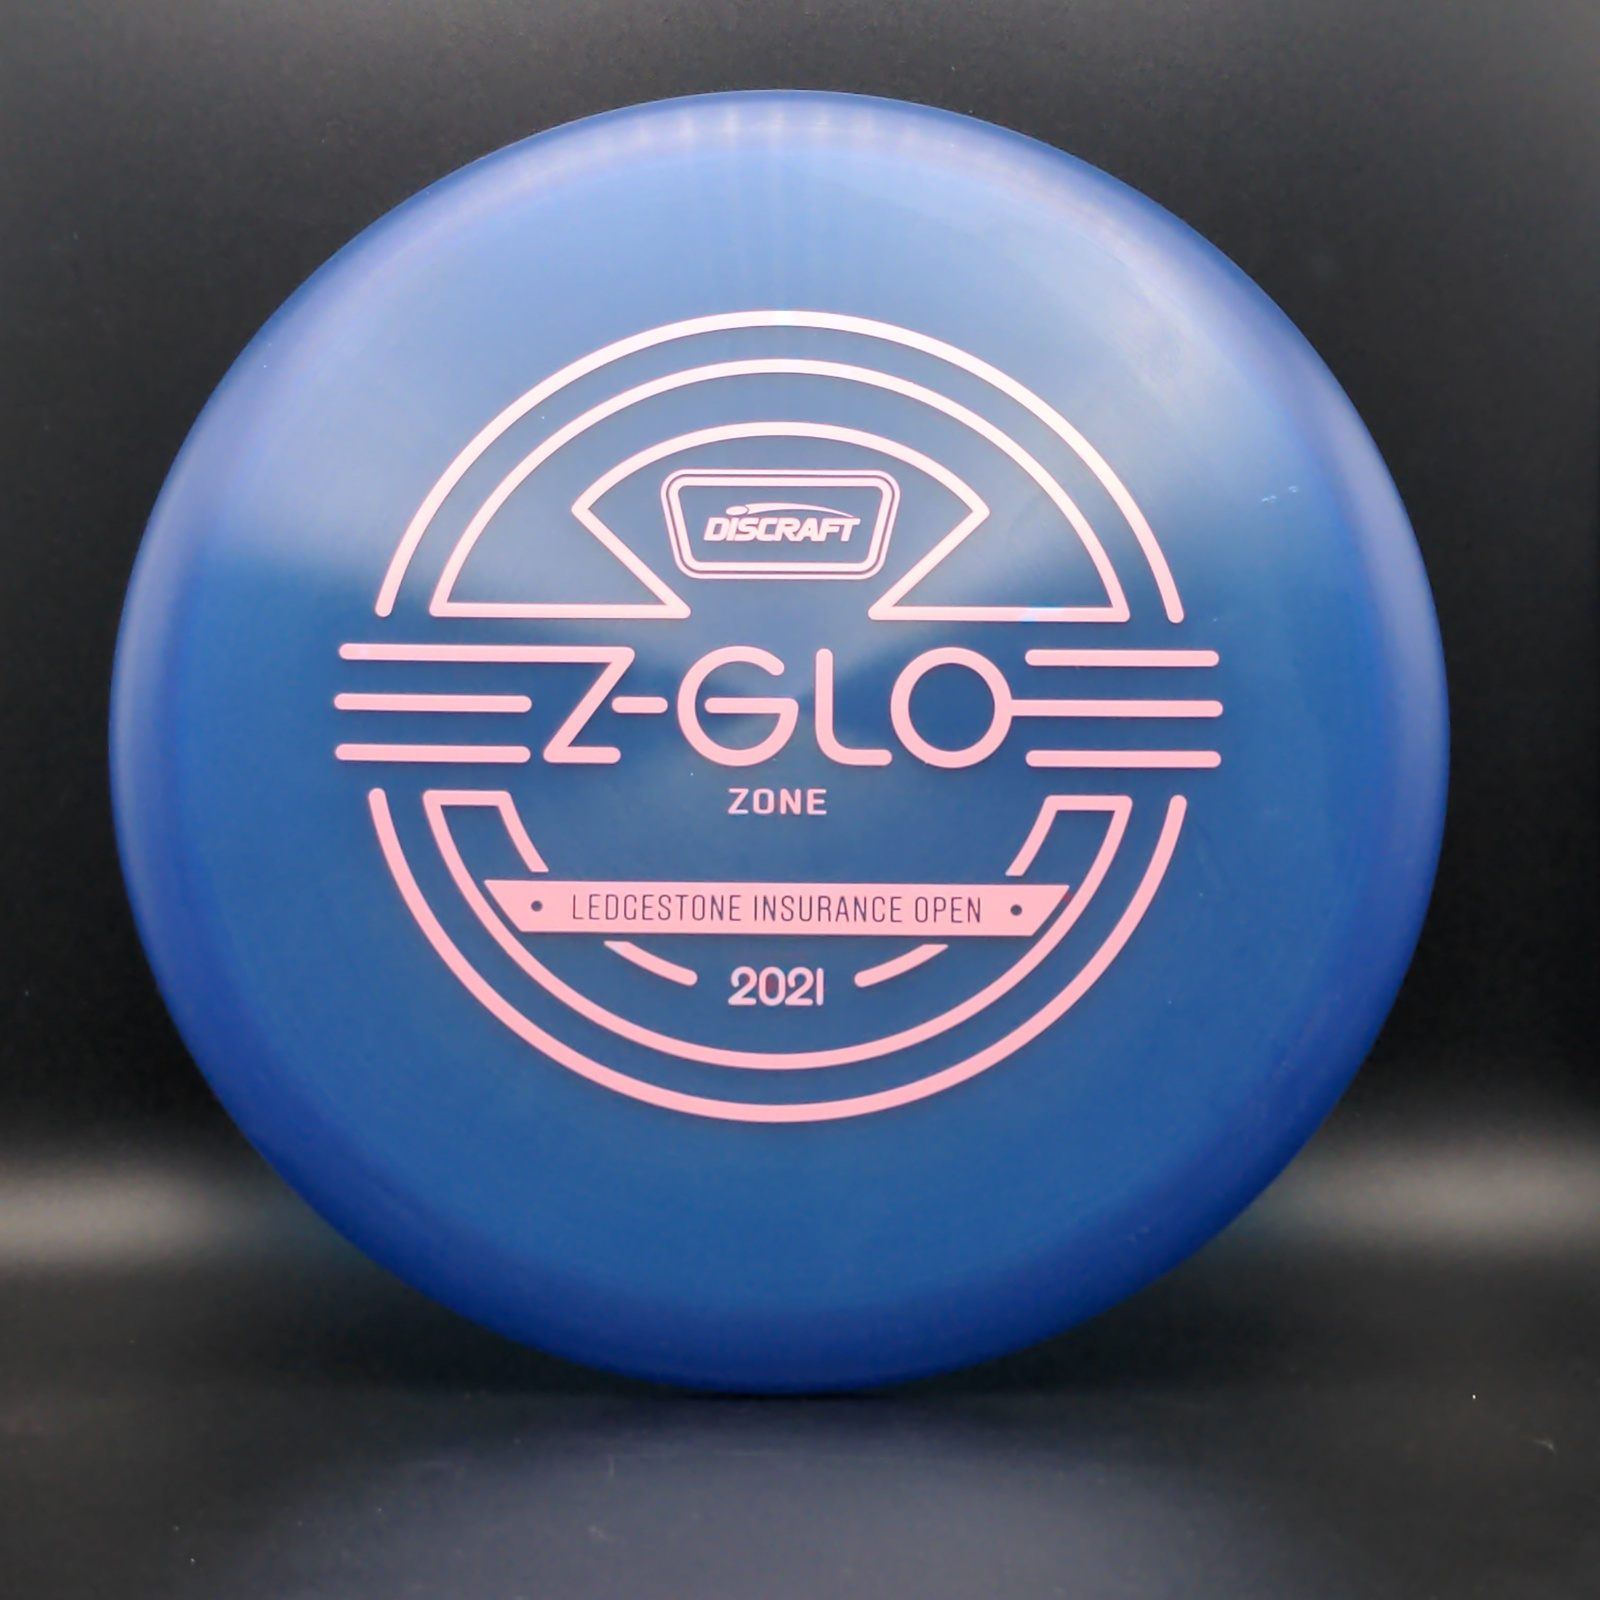 Z Glo Zone - Limited Edition 2021 Ledgestone